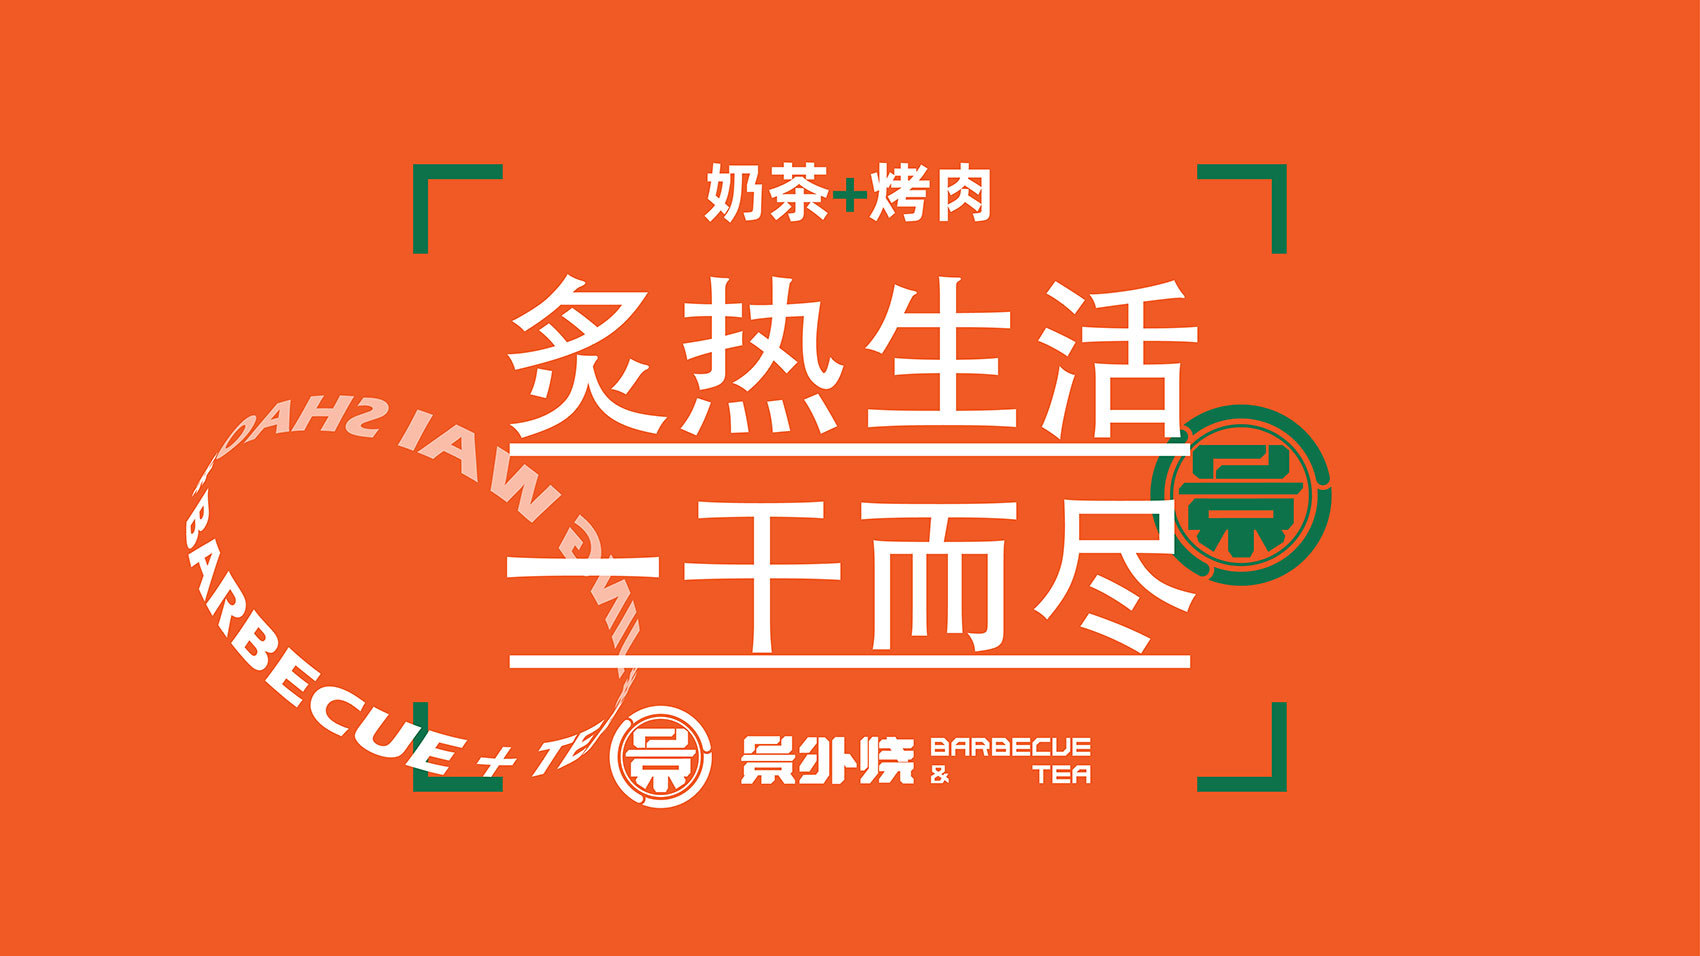 景外烧VI设计  上海VI设计 企业logo设计 上海logo设计 宿迁logo设计 餐饮logo设计